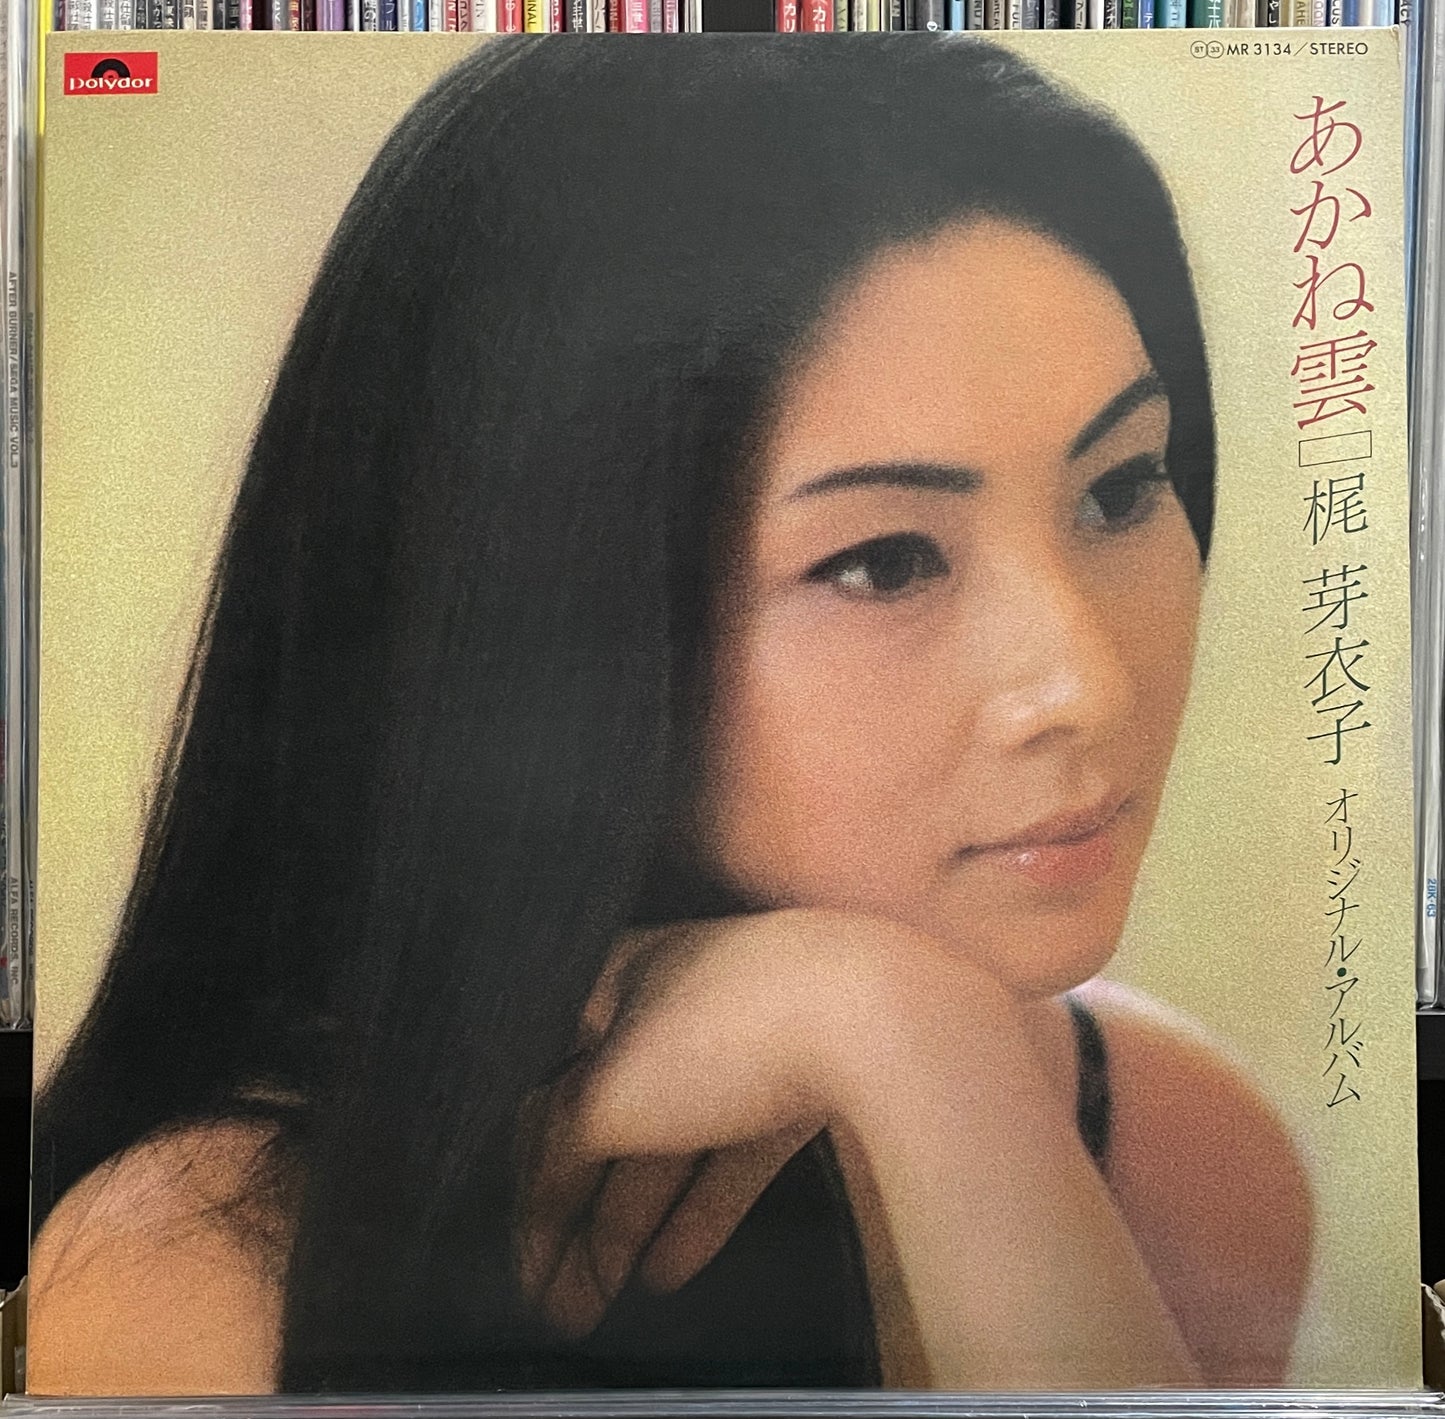 Meiko Kaji “あかね雲“ (1978)